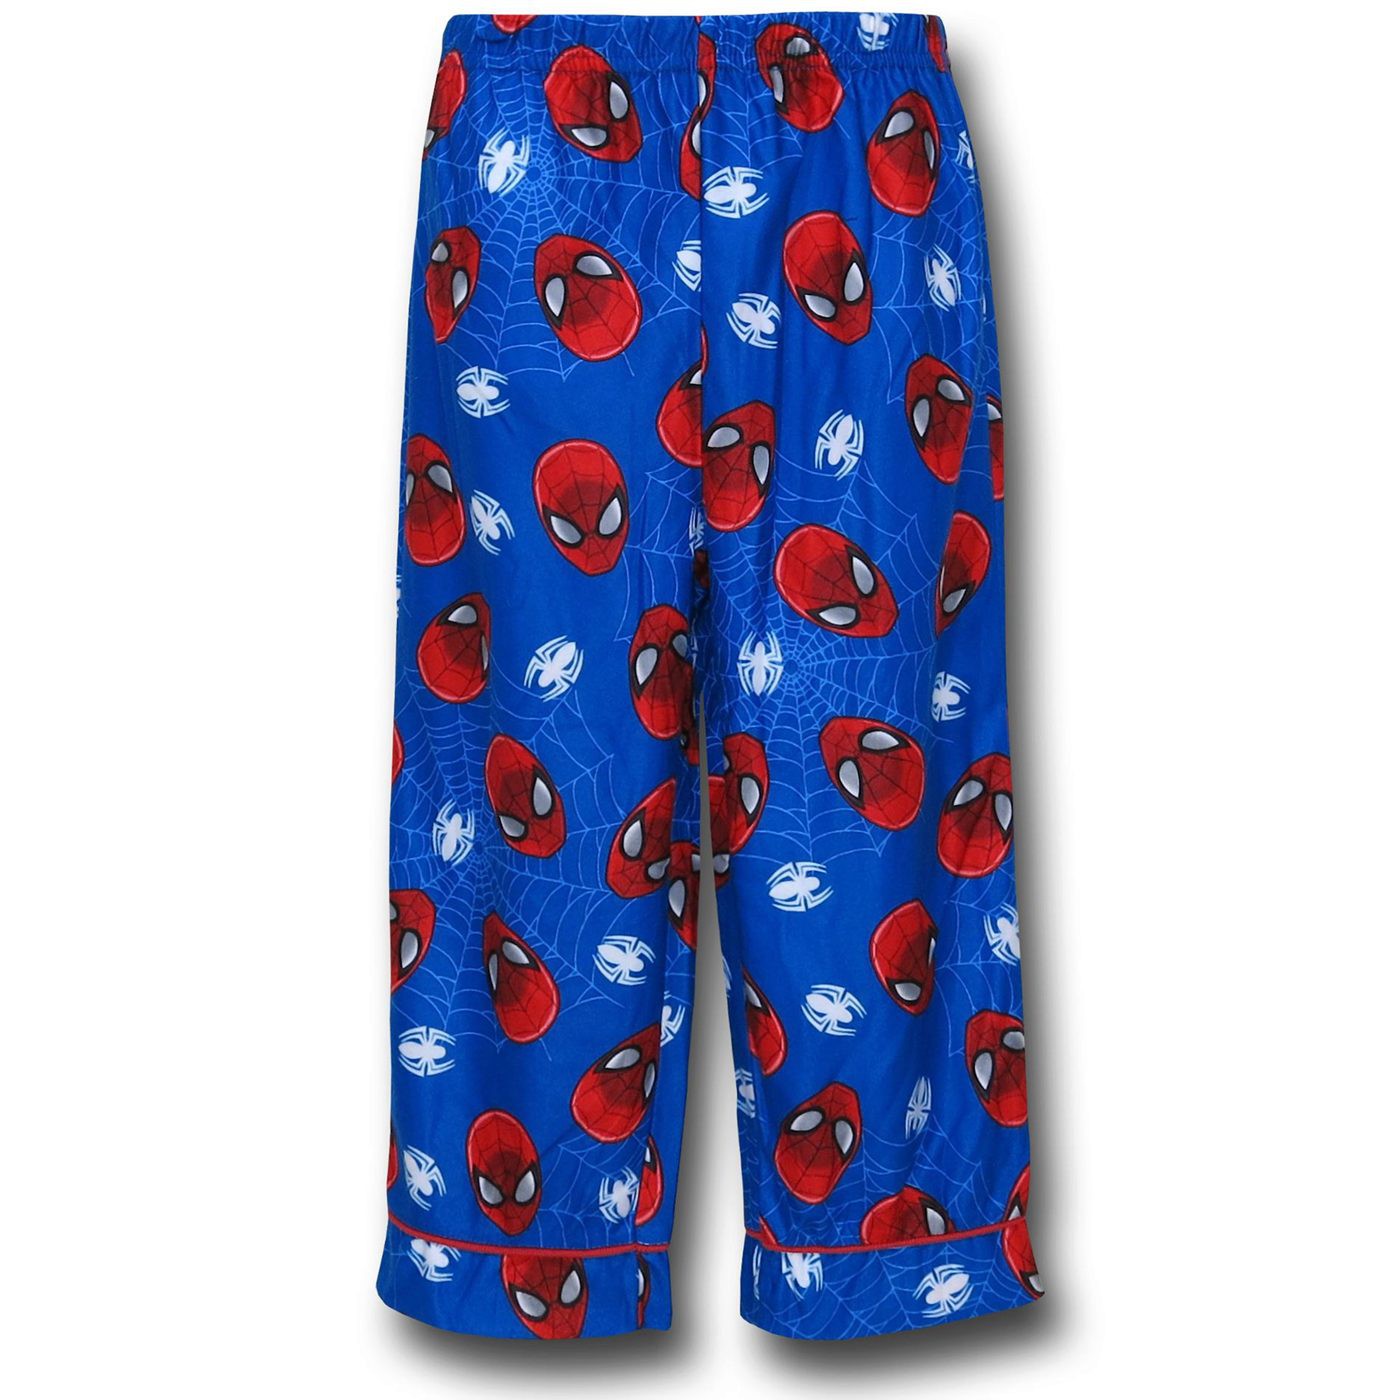 Spiderman Blue Button-Up Kids Pajamas